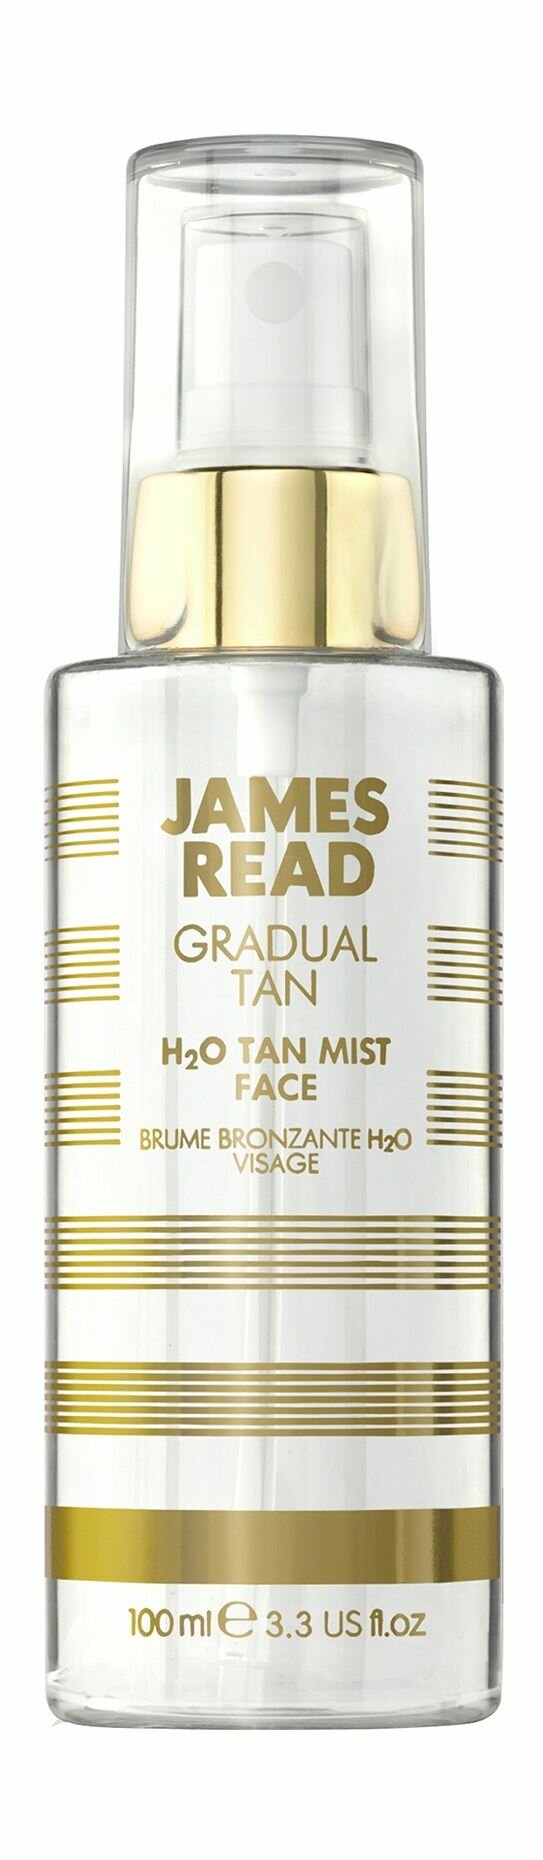 Спрей-автозагар для освежающего сияния лица / James Read Gradual Tan H2O Tan Mist Face